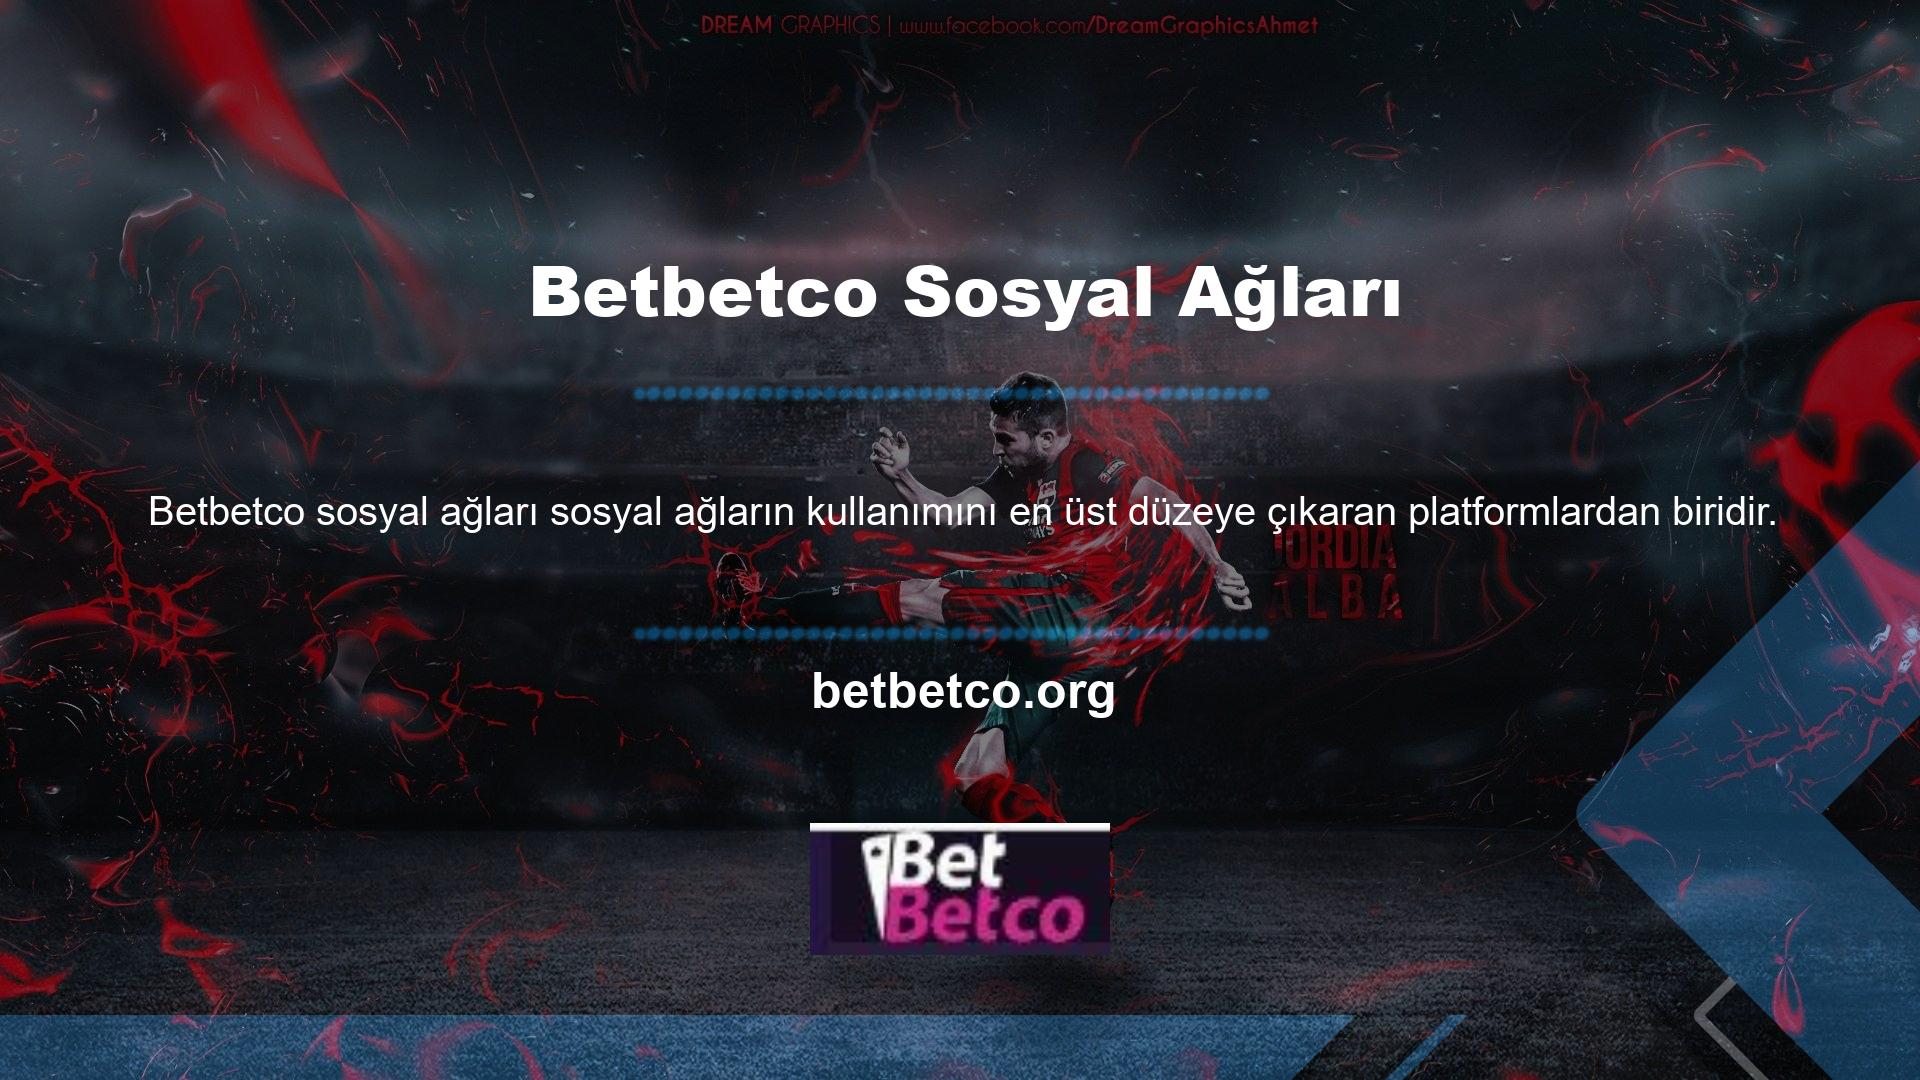 Medya siteleri aracılığıyla hizmet ve çeşitli bilgiler sağlayan Betbetco Instagram adresi, en basit sosyal medya kanalıdır